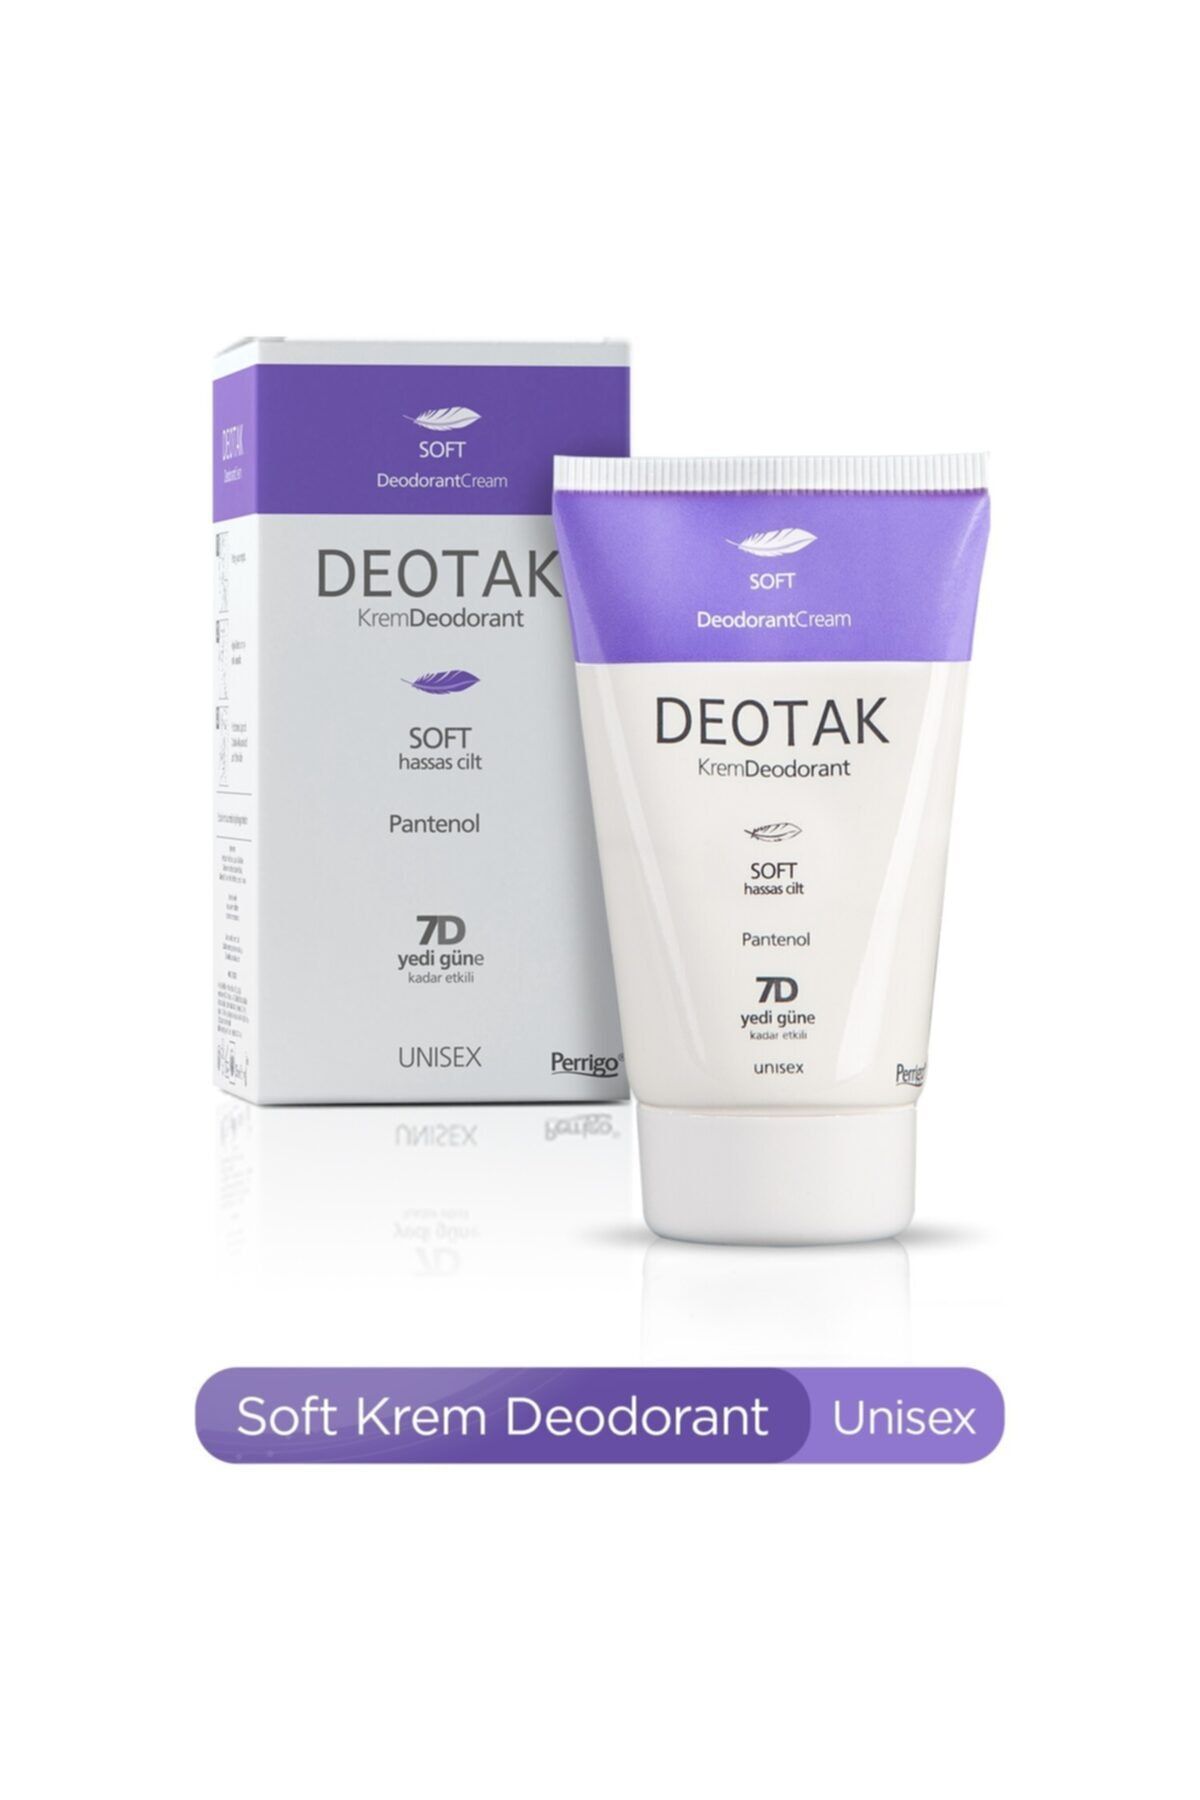 Deotak Krem Deodorant Soft 35ml Hassas Ciltler İçin Krem Deodorant